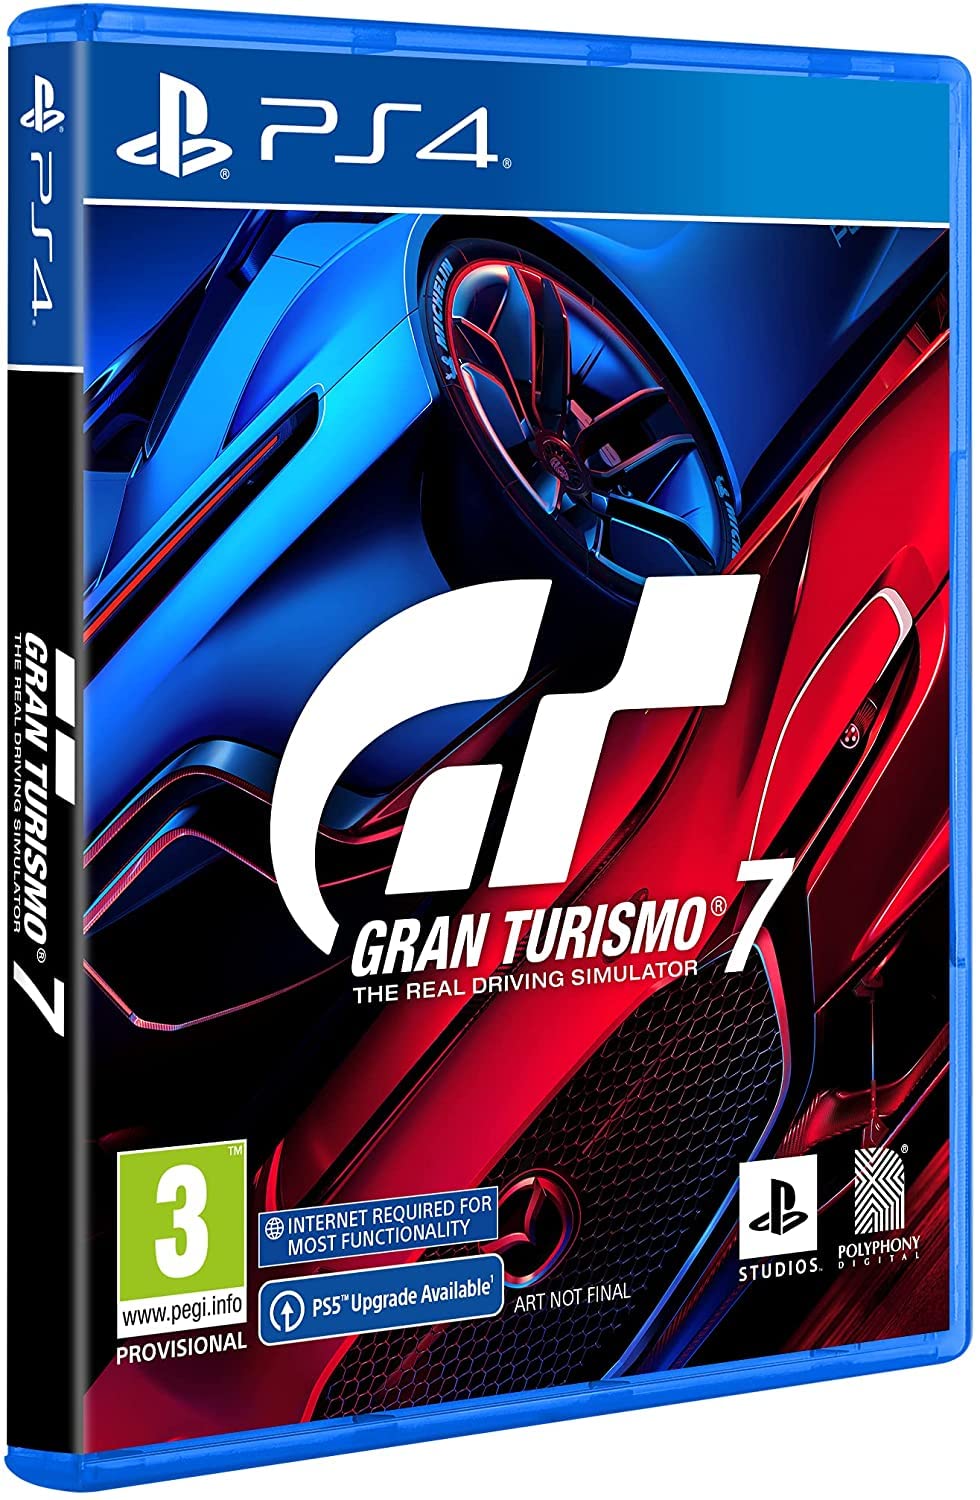 Grand Turismo Ps3